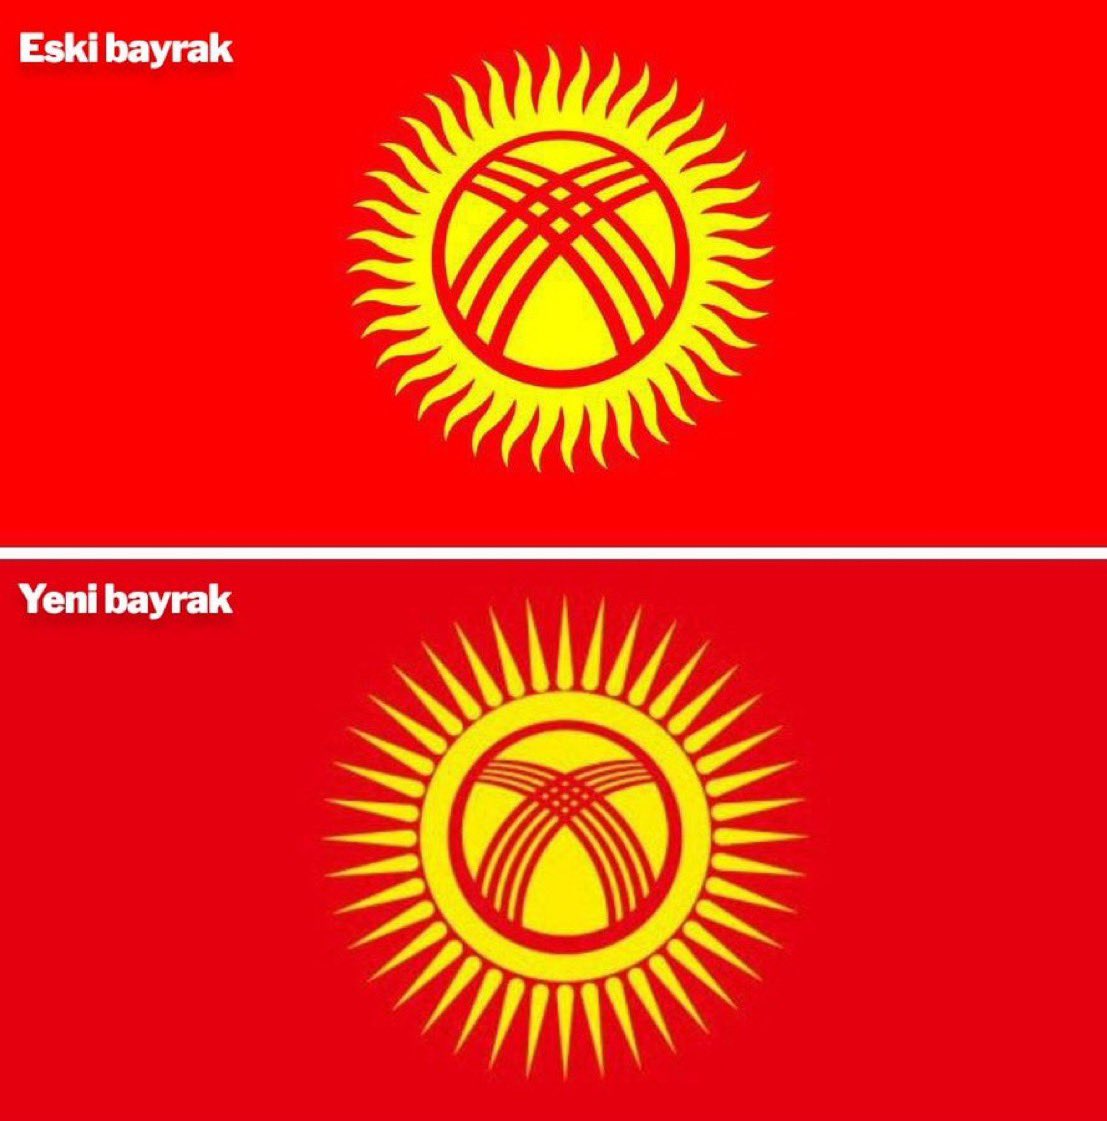 Kırgızistan’ın Bayrağı Değişti